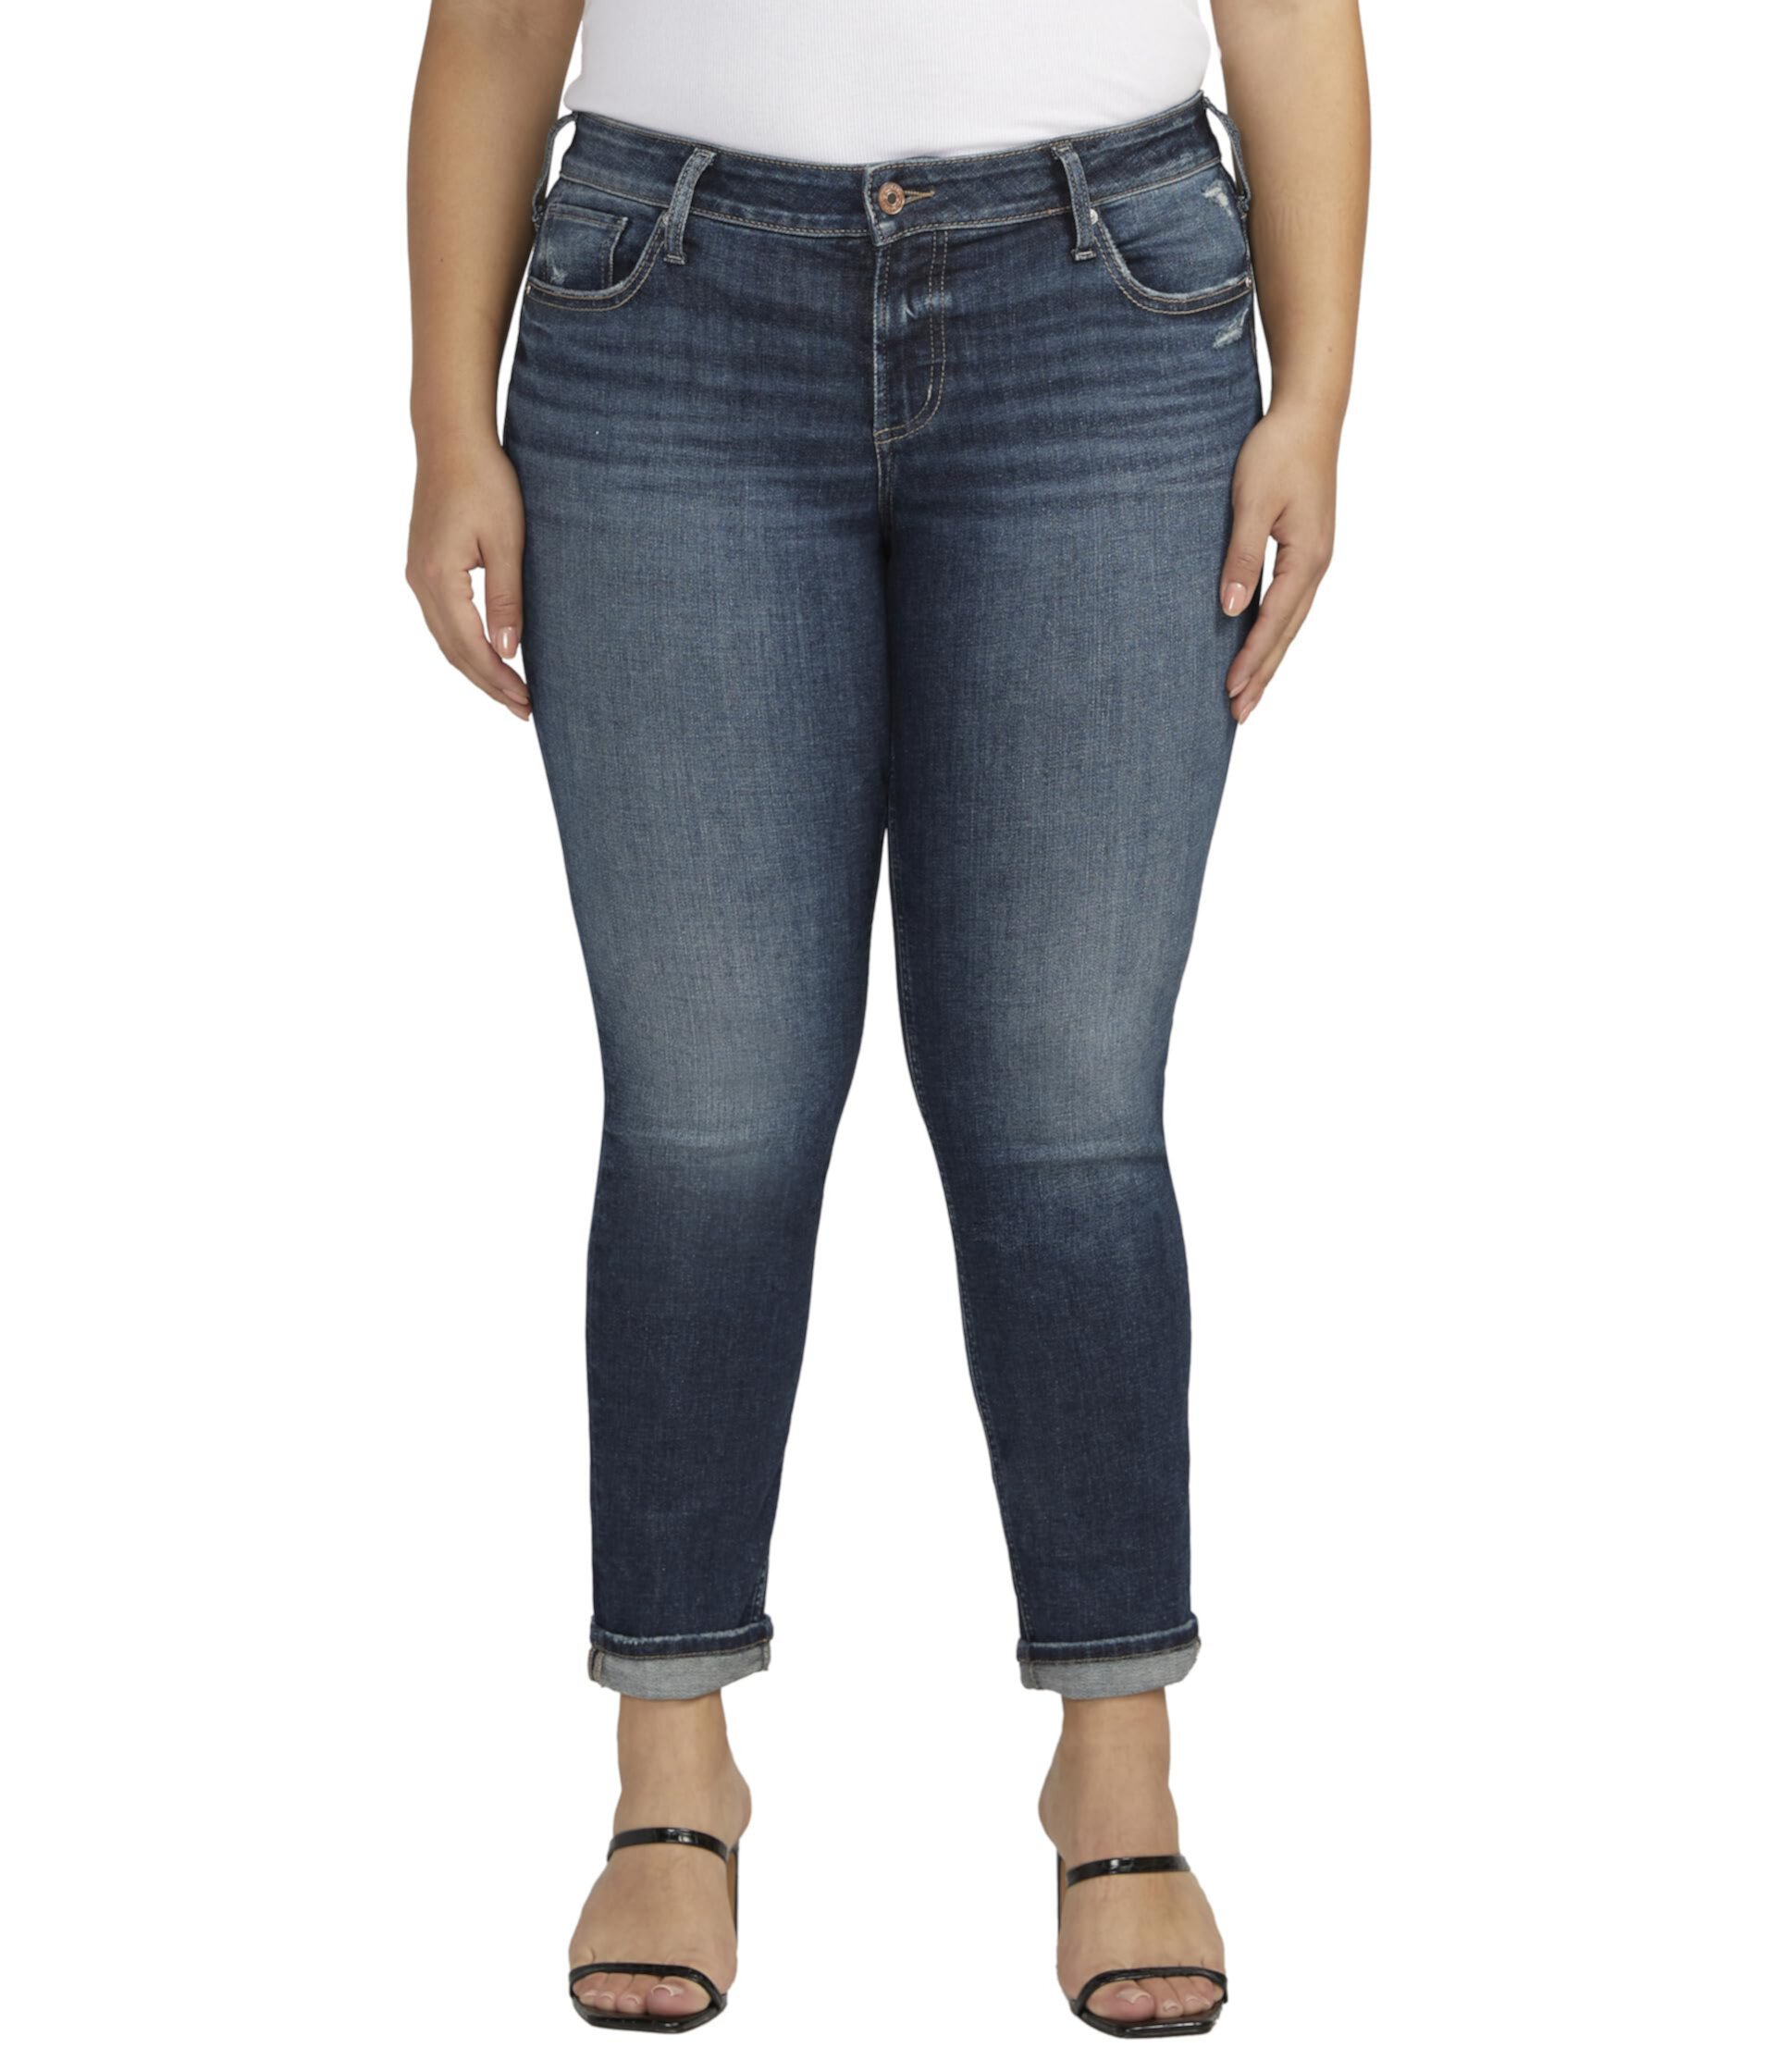 Узкие джинсы Girlfriend со средней посадкой W27129EAE480 больших размеров Silver Jeans Co.